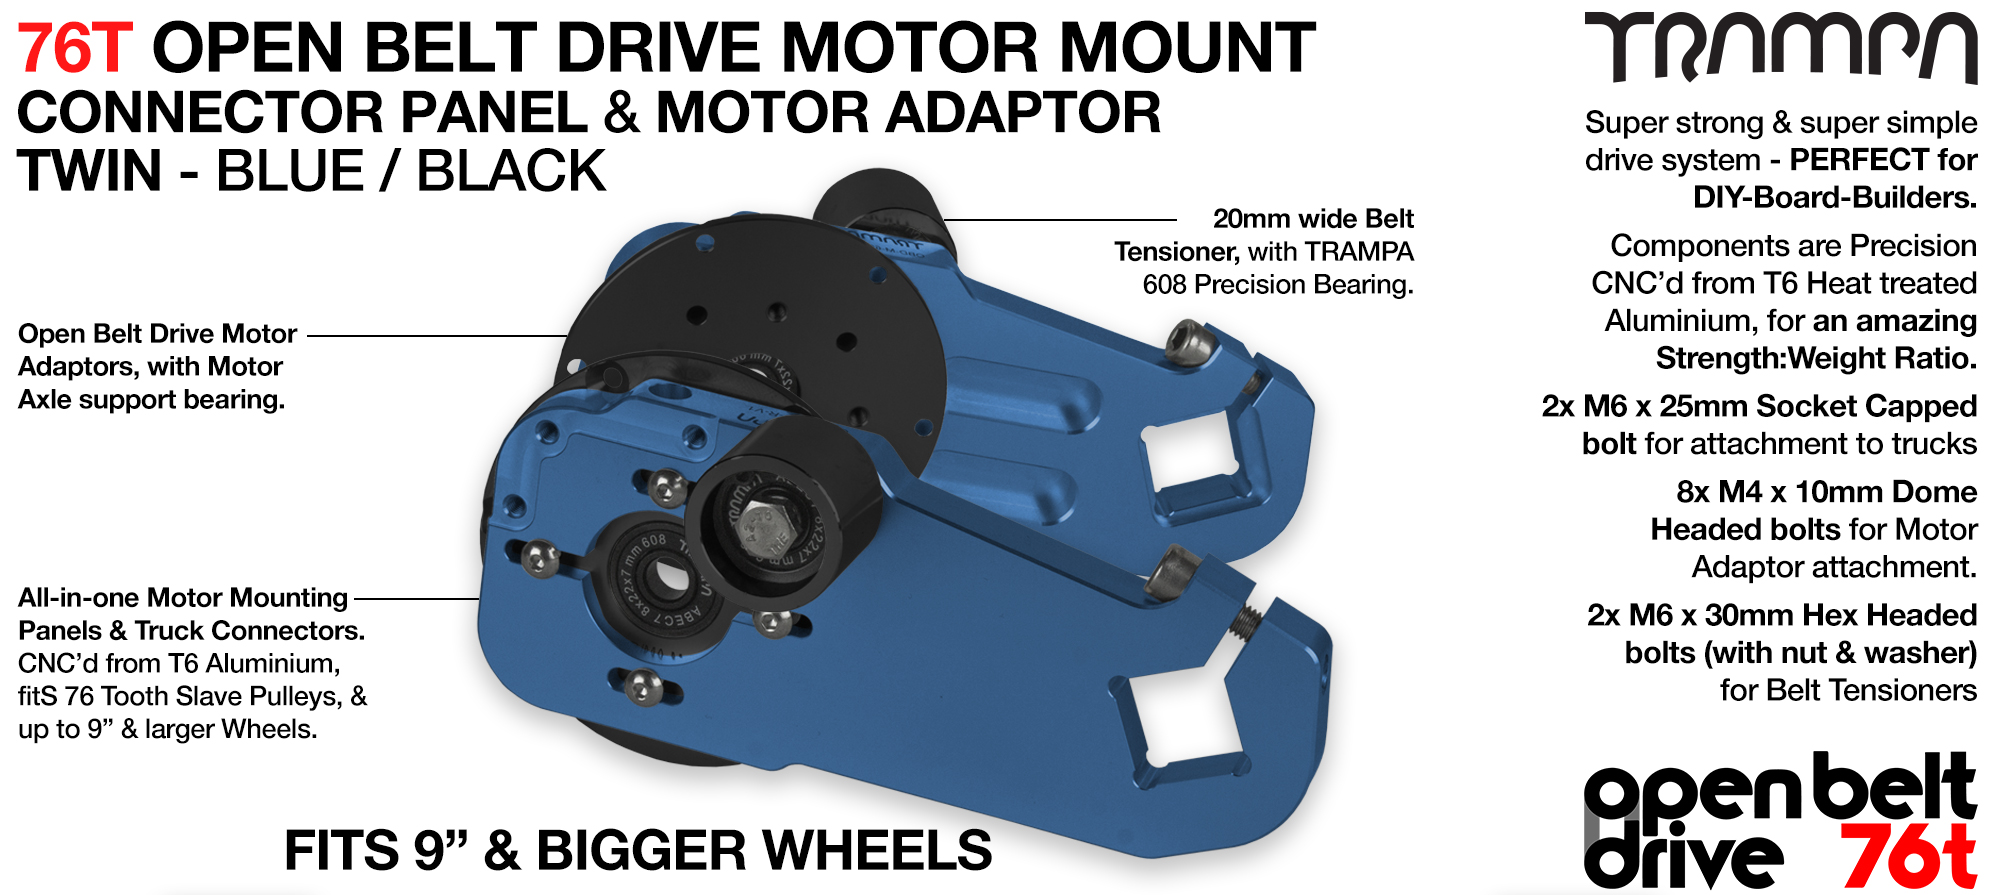 76T Open Belt Drive Motor Mount & Motor Adaptor - TWIN BLUE